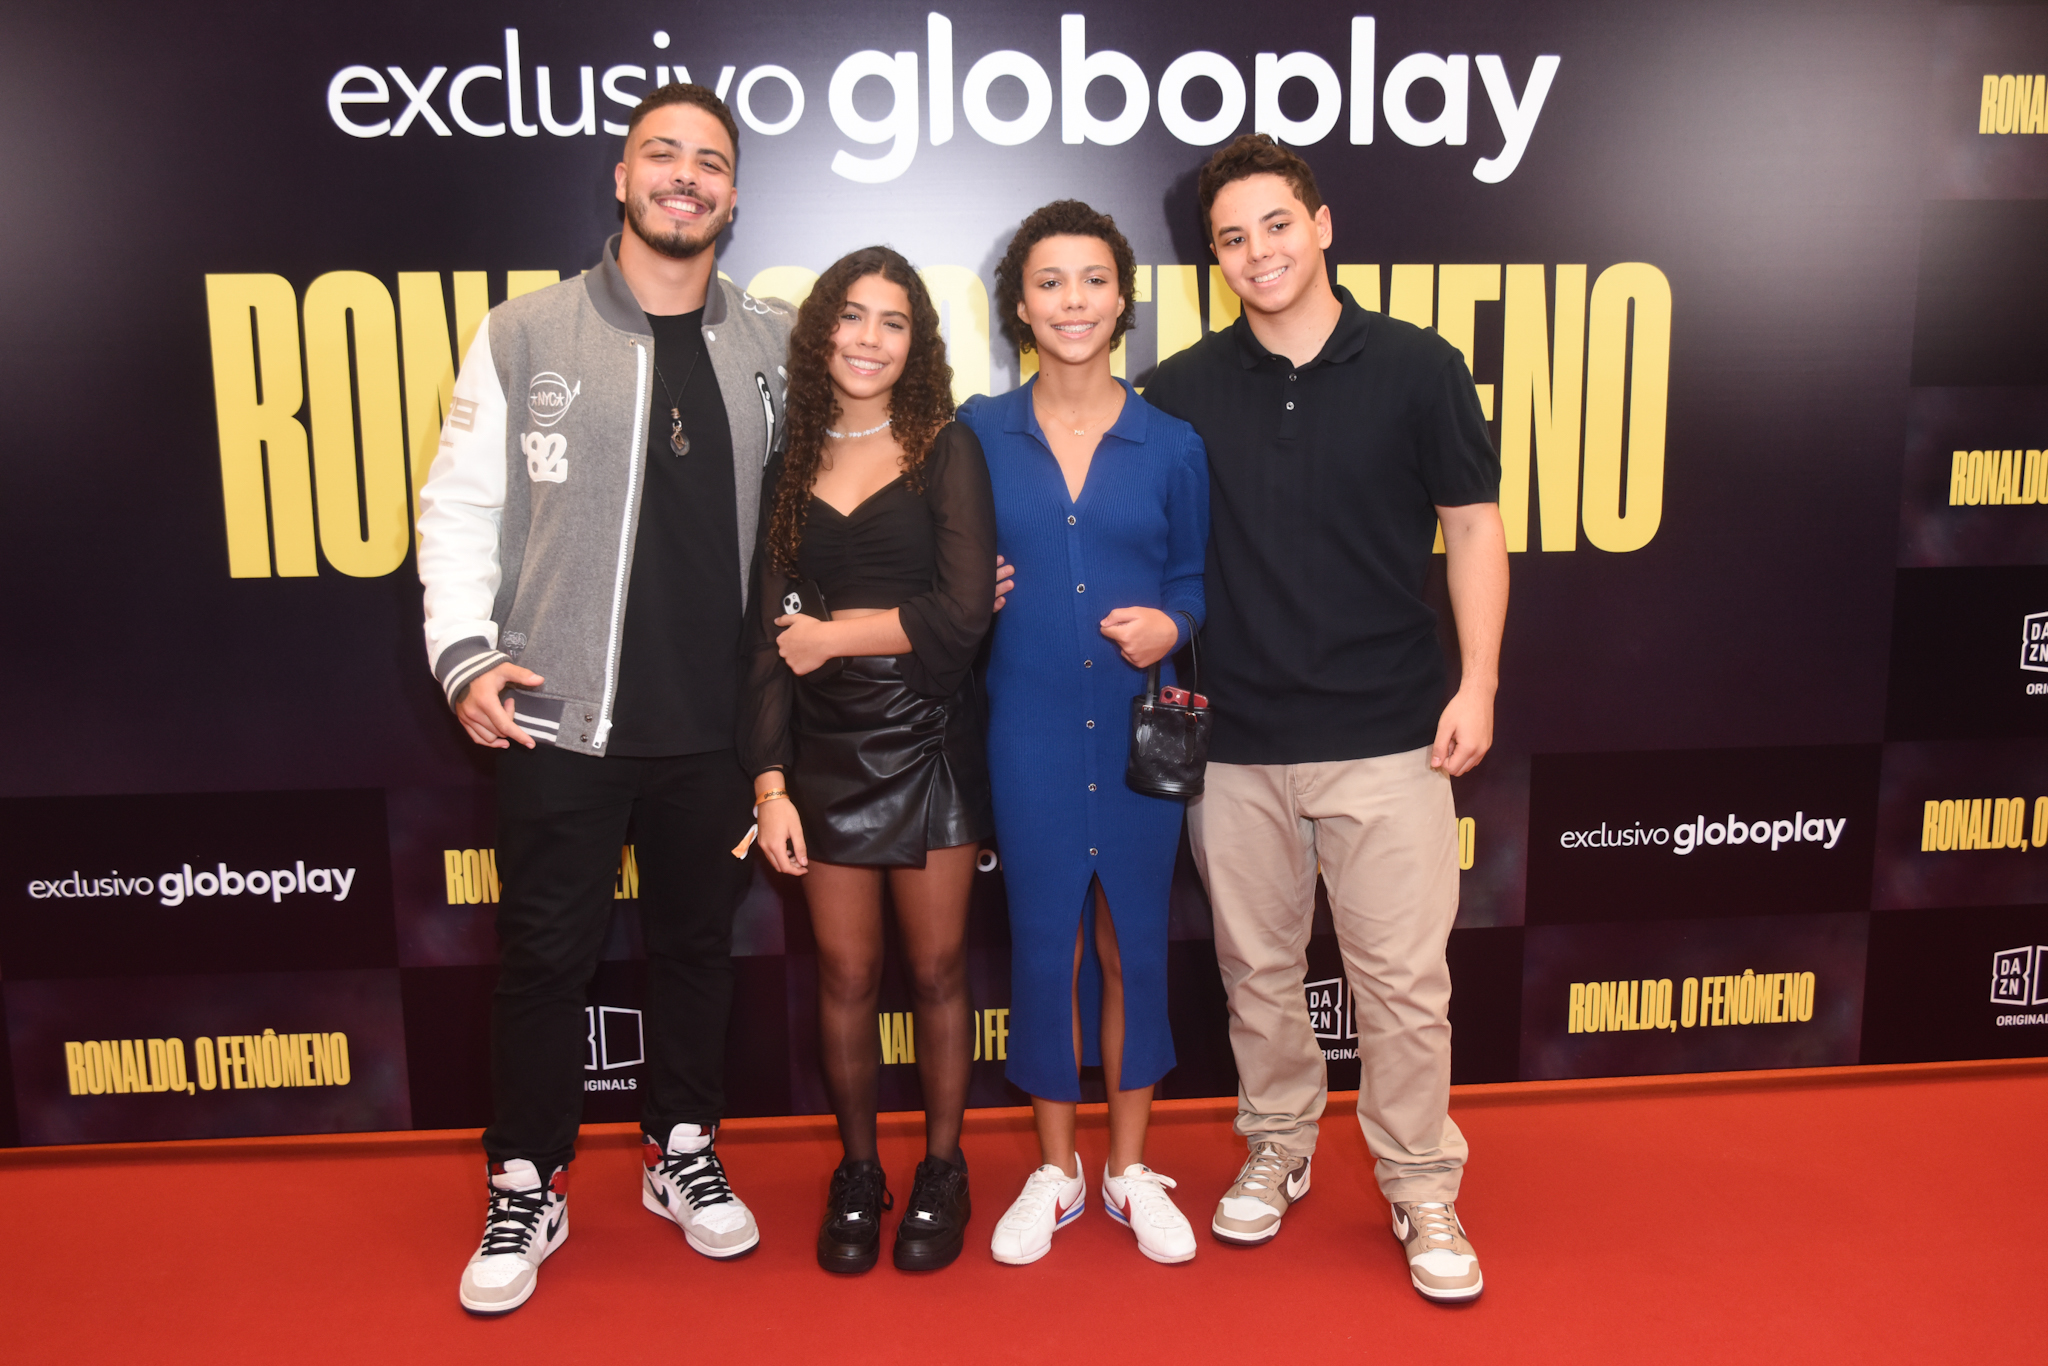 Ronaldo Fenômeno recebe a família em lançamento de documentário